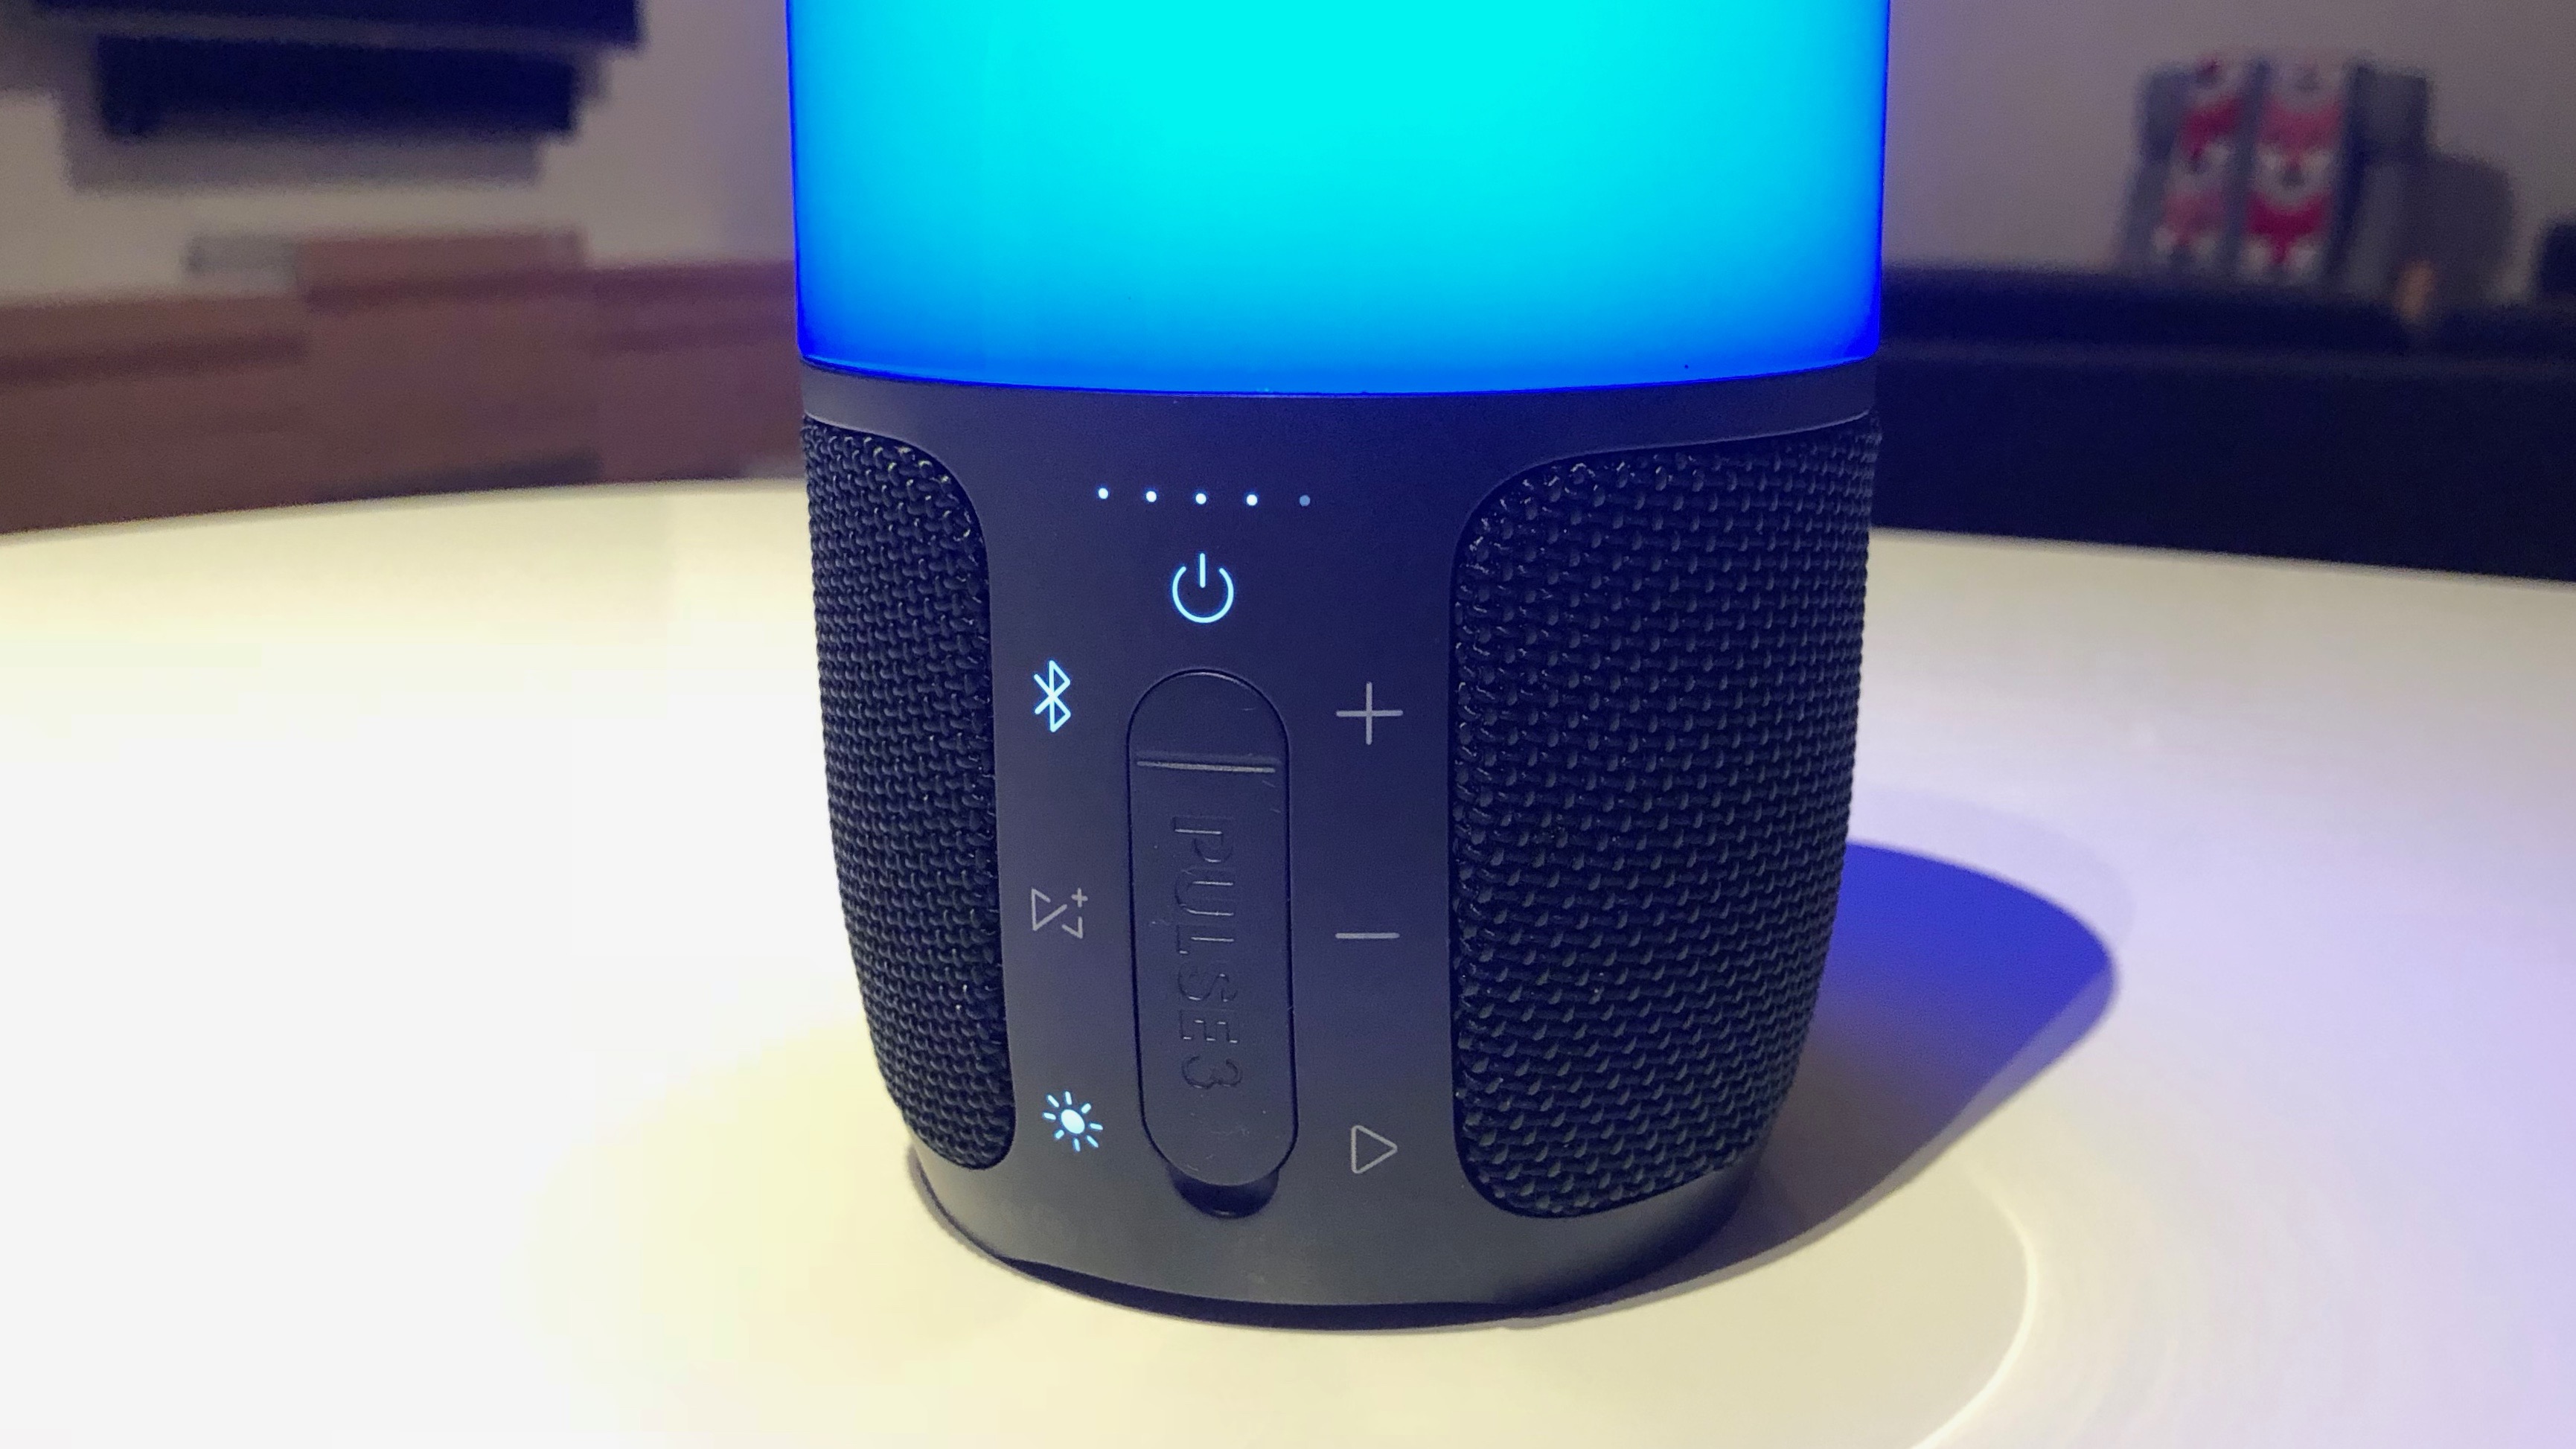 JBL's Pulse 3 waterproof speaker offers 